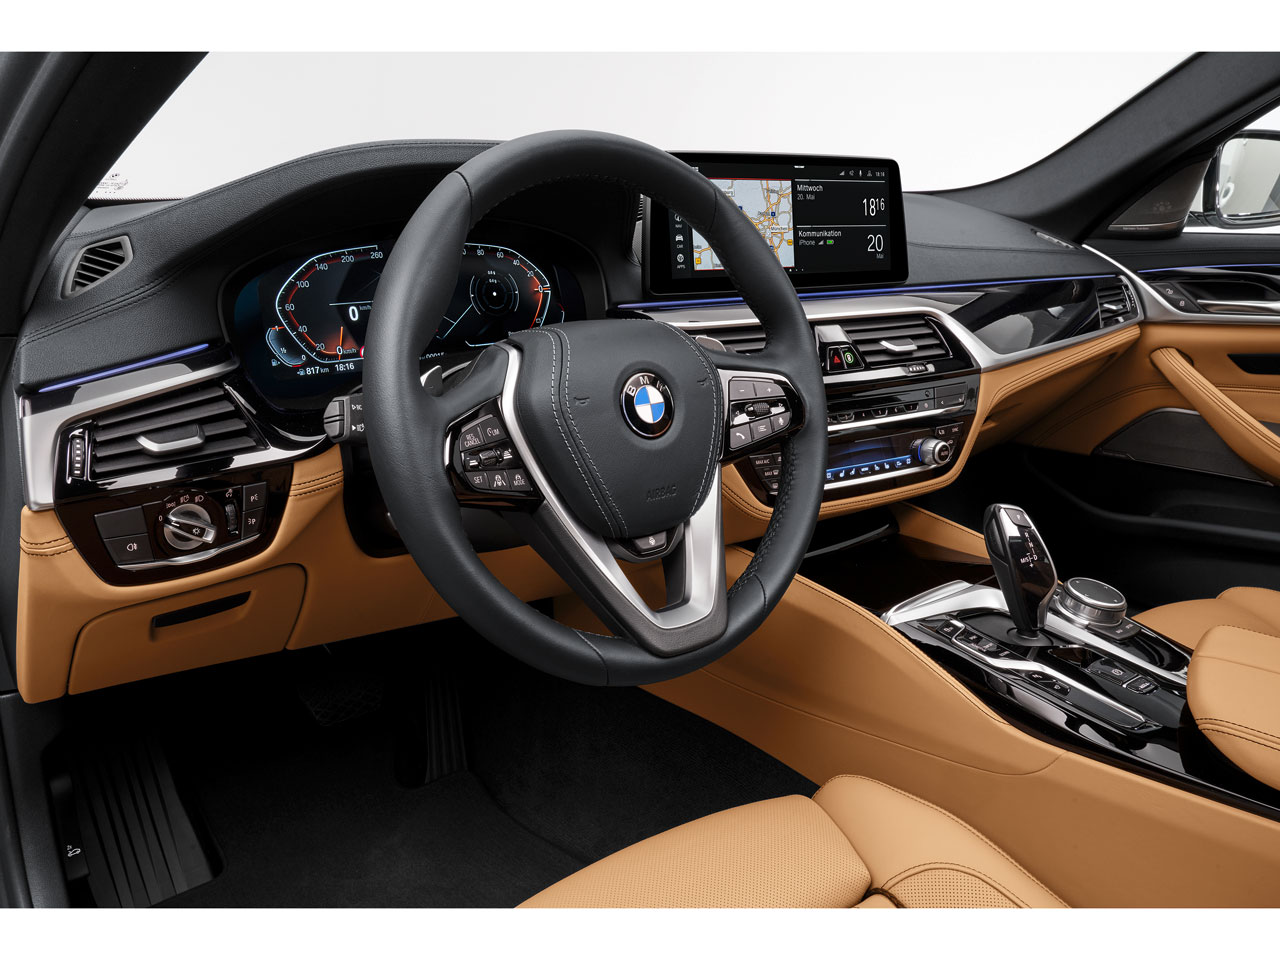 BMW 5シリーズ セダン 2017年モデル 523i M Sport THE PEAKの価格